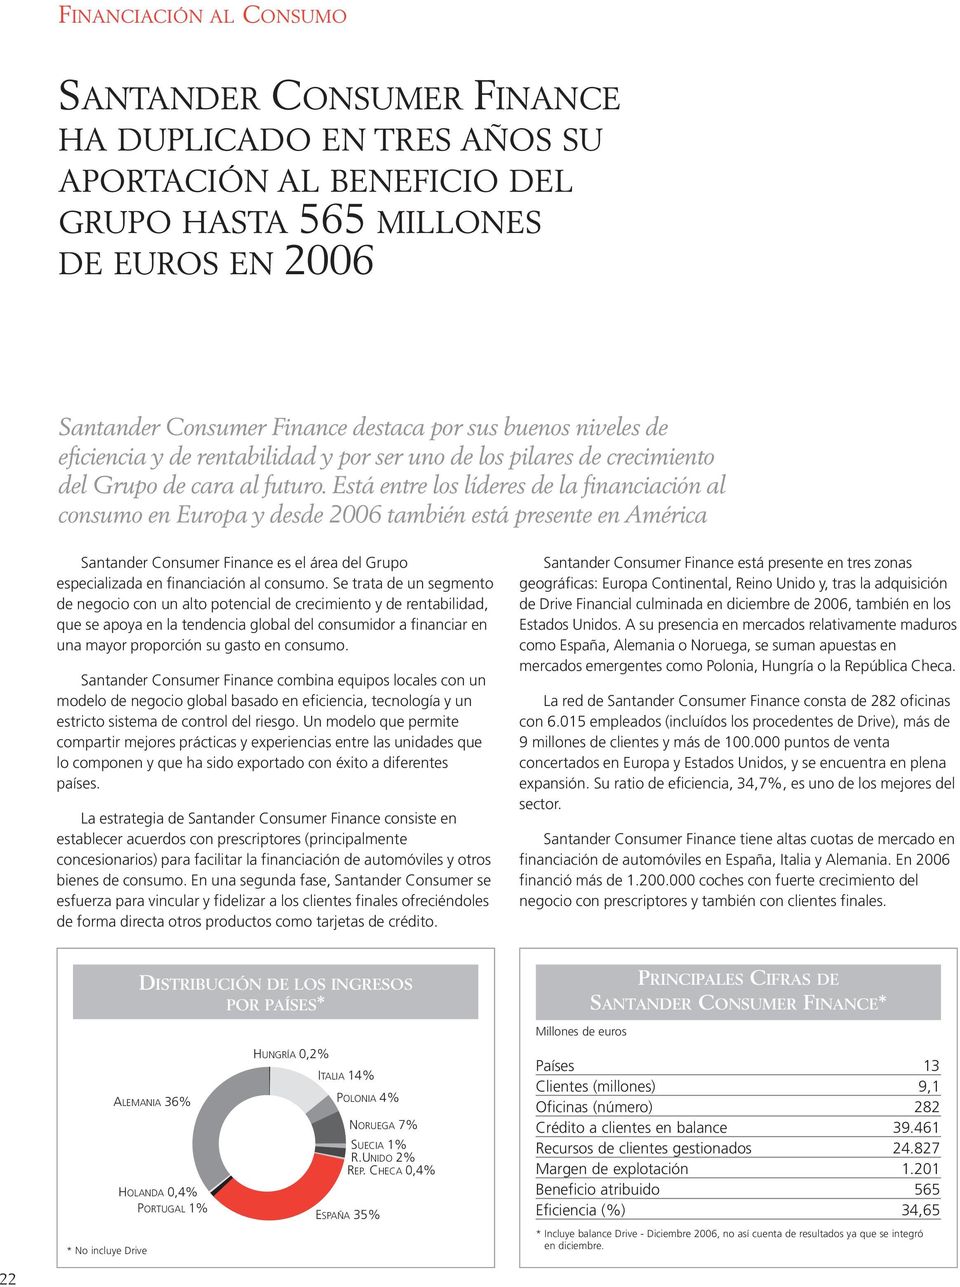 Está entre los líderes de la financiación al consumo en Europa y desde 2006 también está presente en América Santander Consumer Finance es el área del Grupo especializada en financiación al consumo.